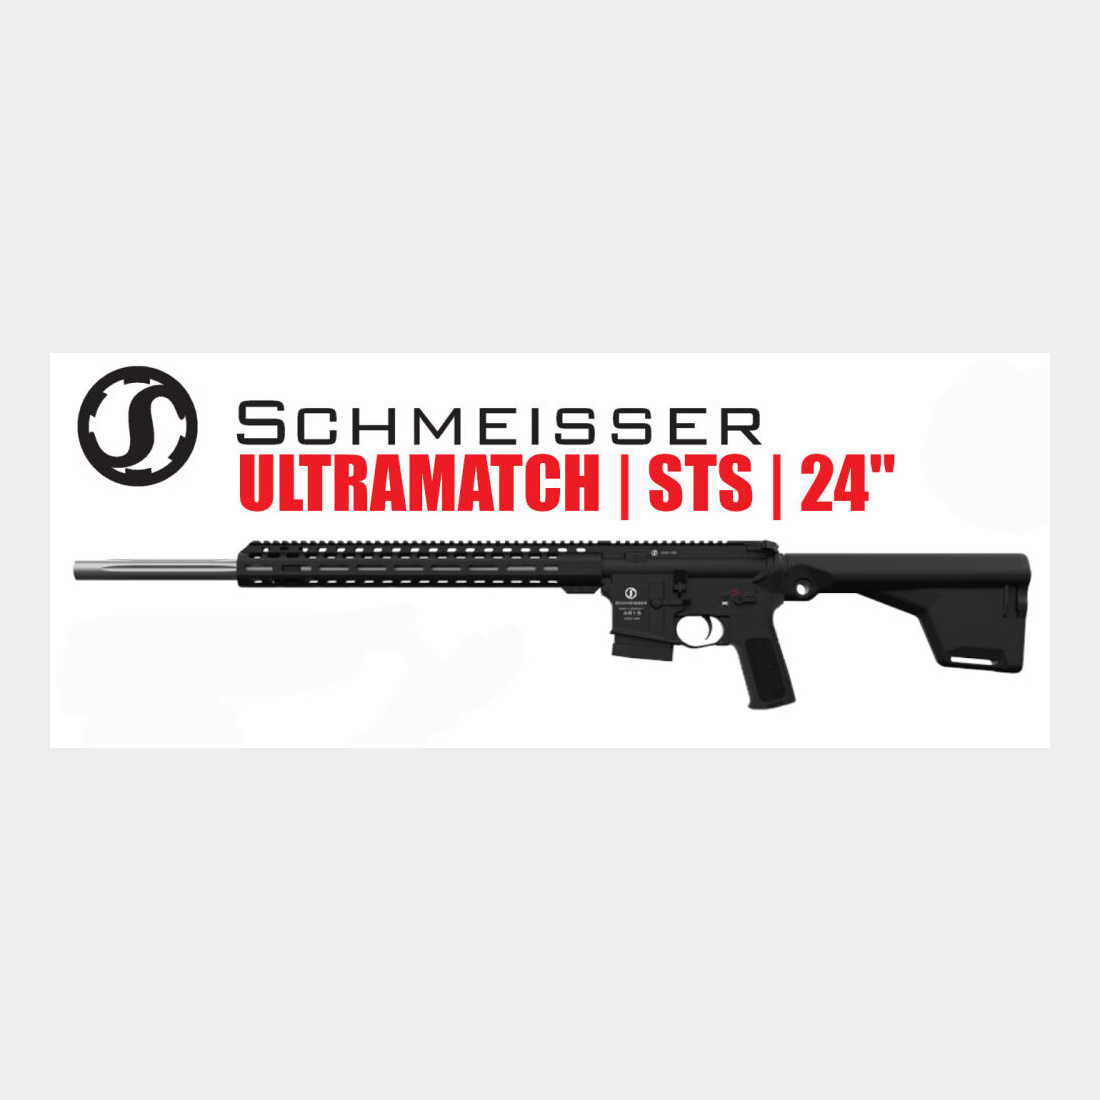 SCHMEISSER AR15 ULTRAMATCH STS 24″ Halbautomatische Büchse 223Rem, *EWB Pfl	 Schmeisser Ultramatch